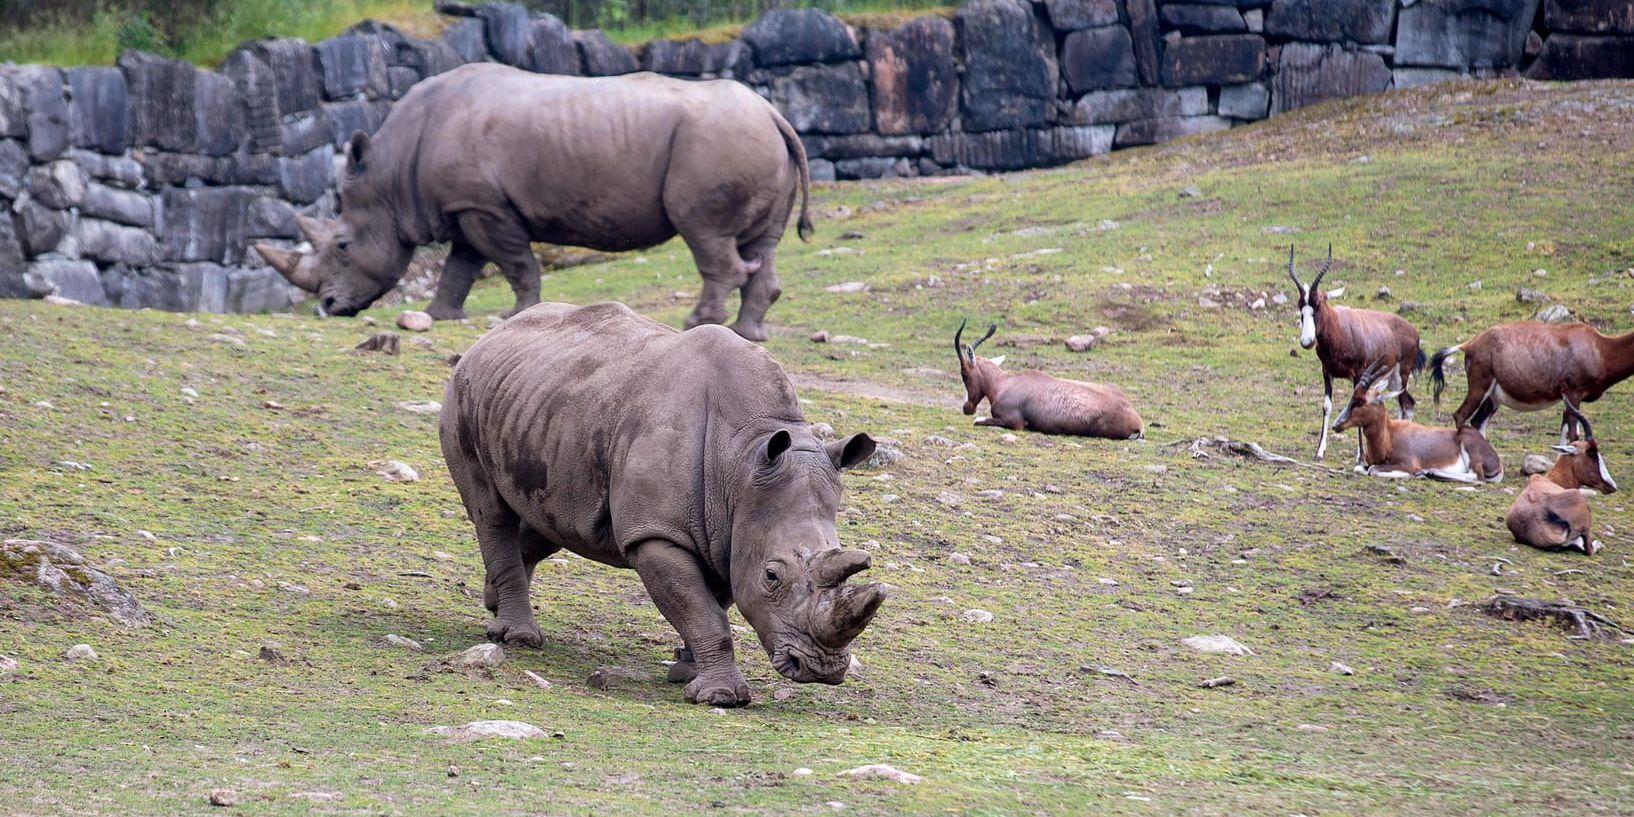 De vita noshörningarna blir allt färre och de är hotade av tjuvjägare som vill komma åt deras horn.